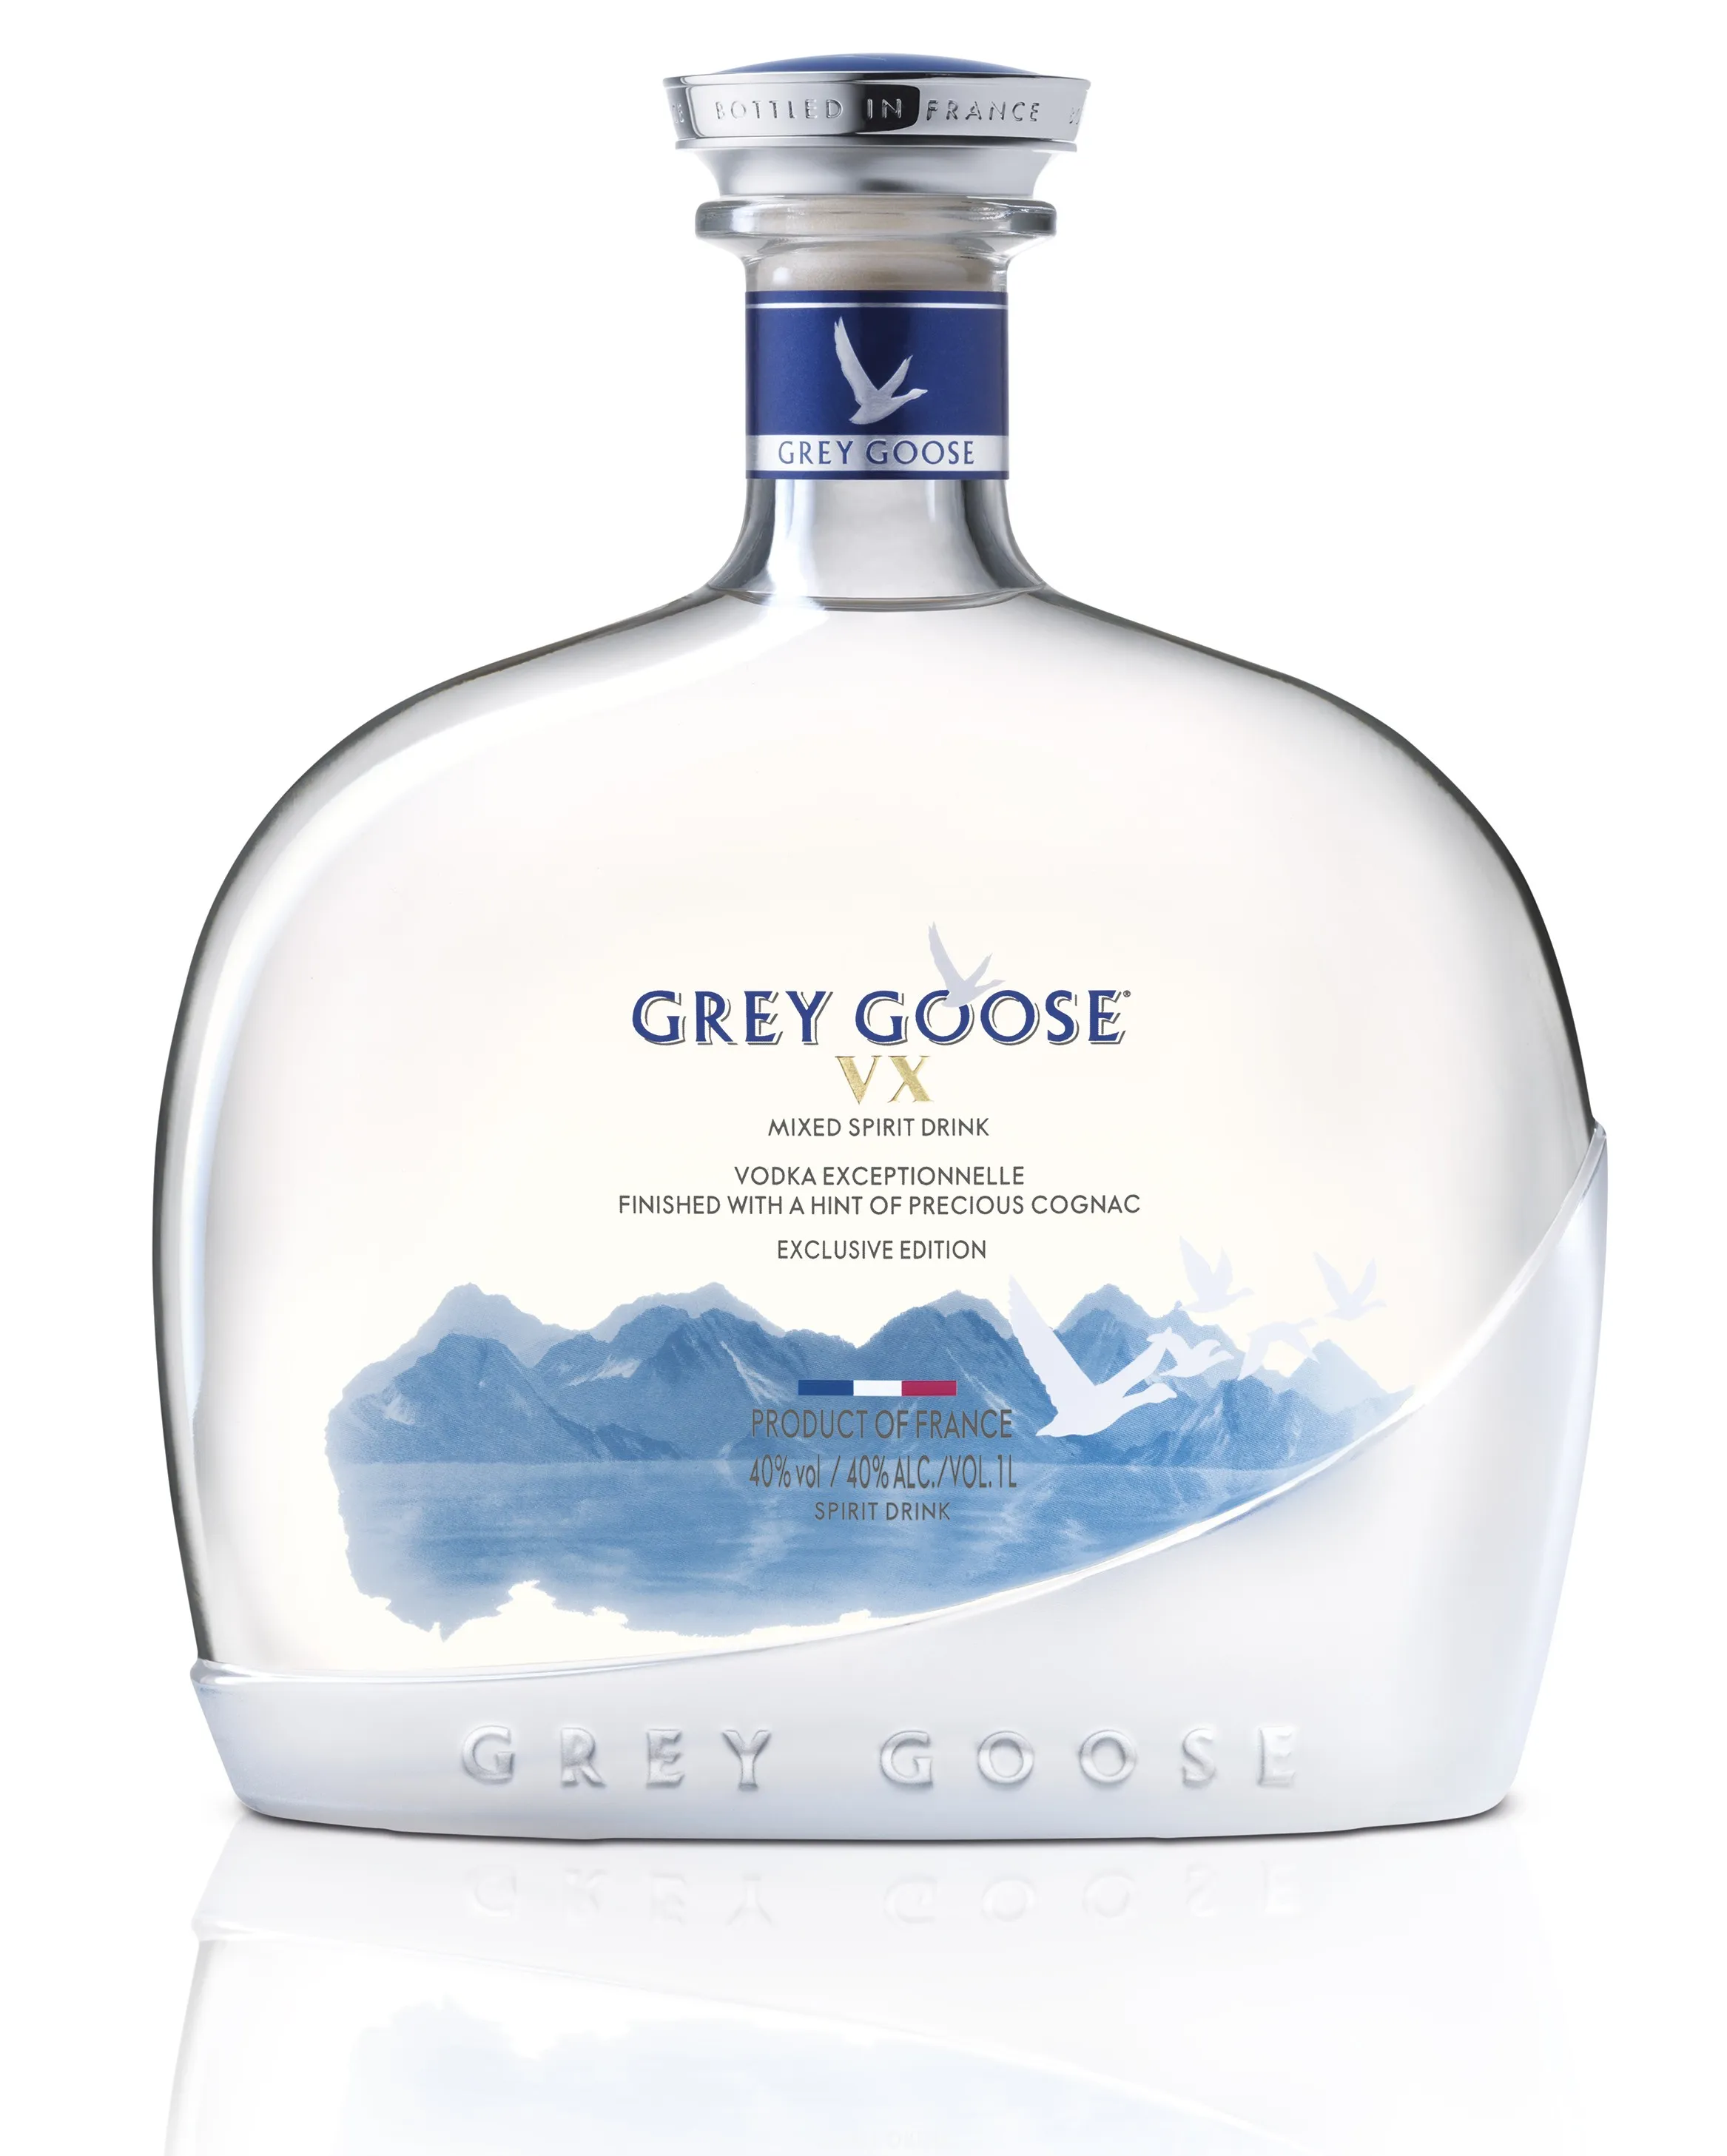 Grey Goose Vx